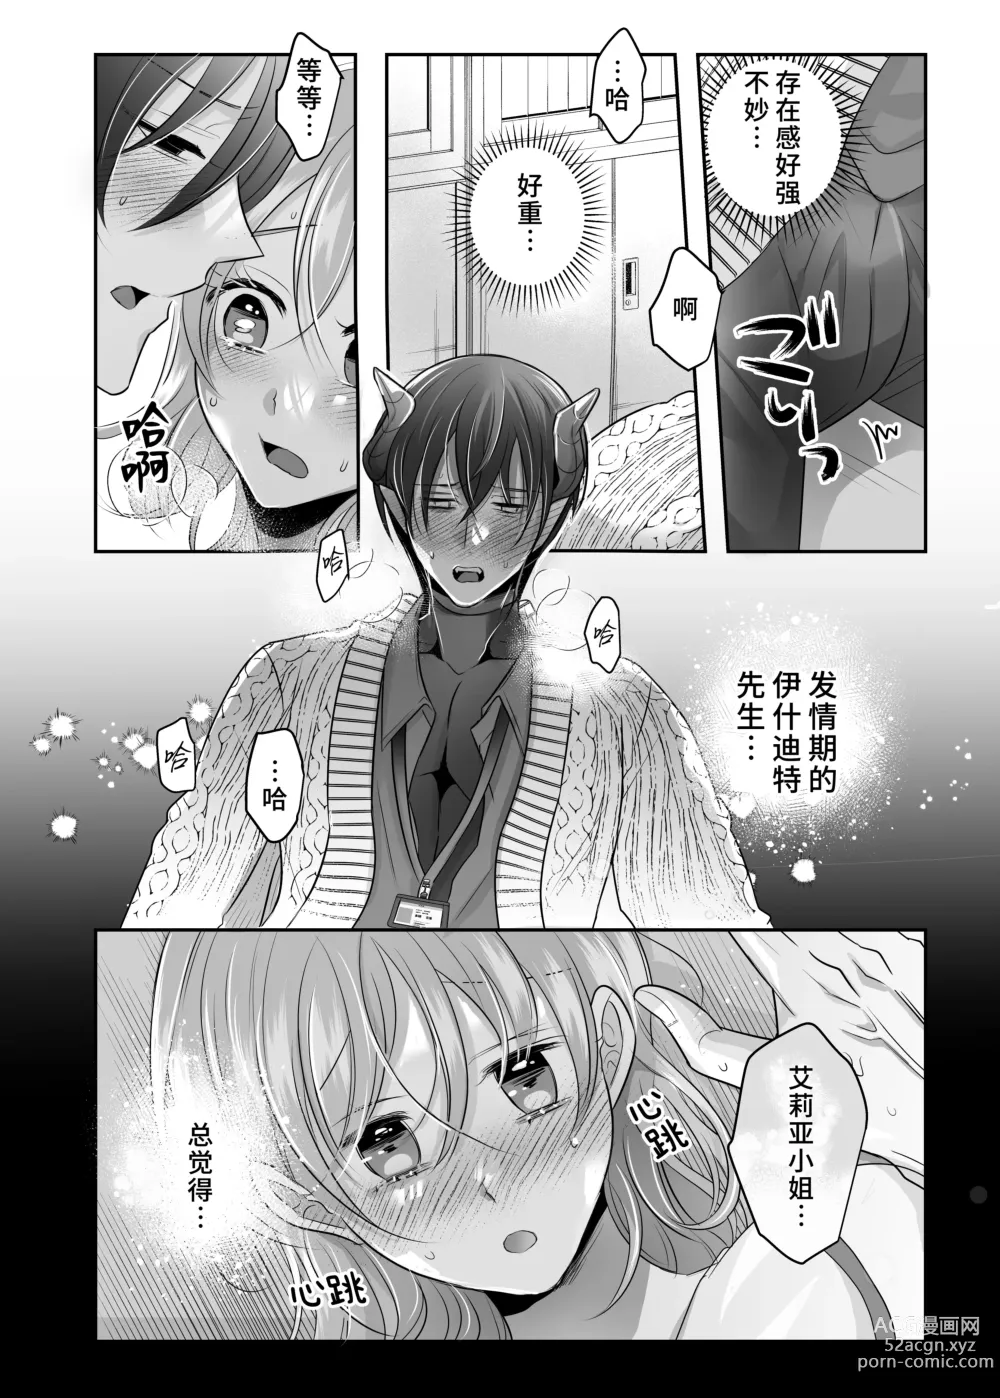 Page 12 of doujinshi 关于我的龙人同事发情期太过骇人这件事